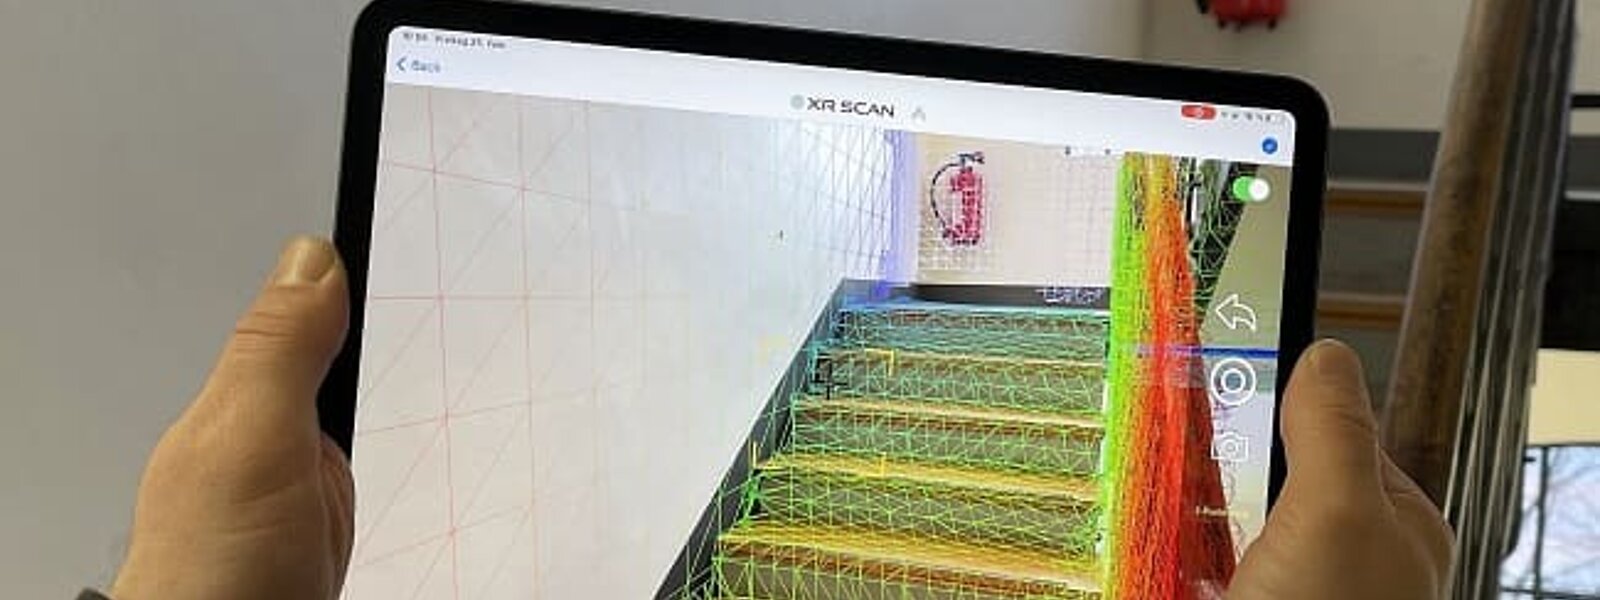 Das digitale Treppenaufmaß mit XR Scan